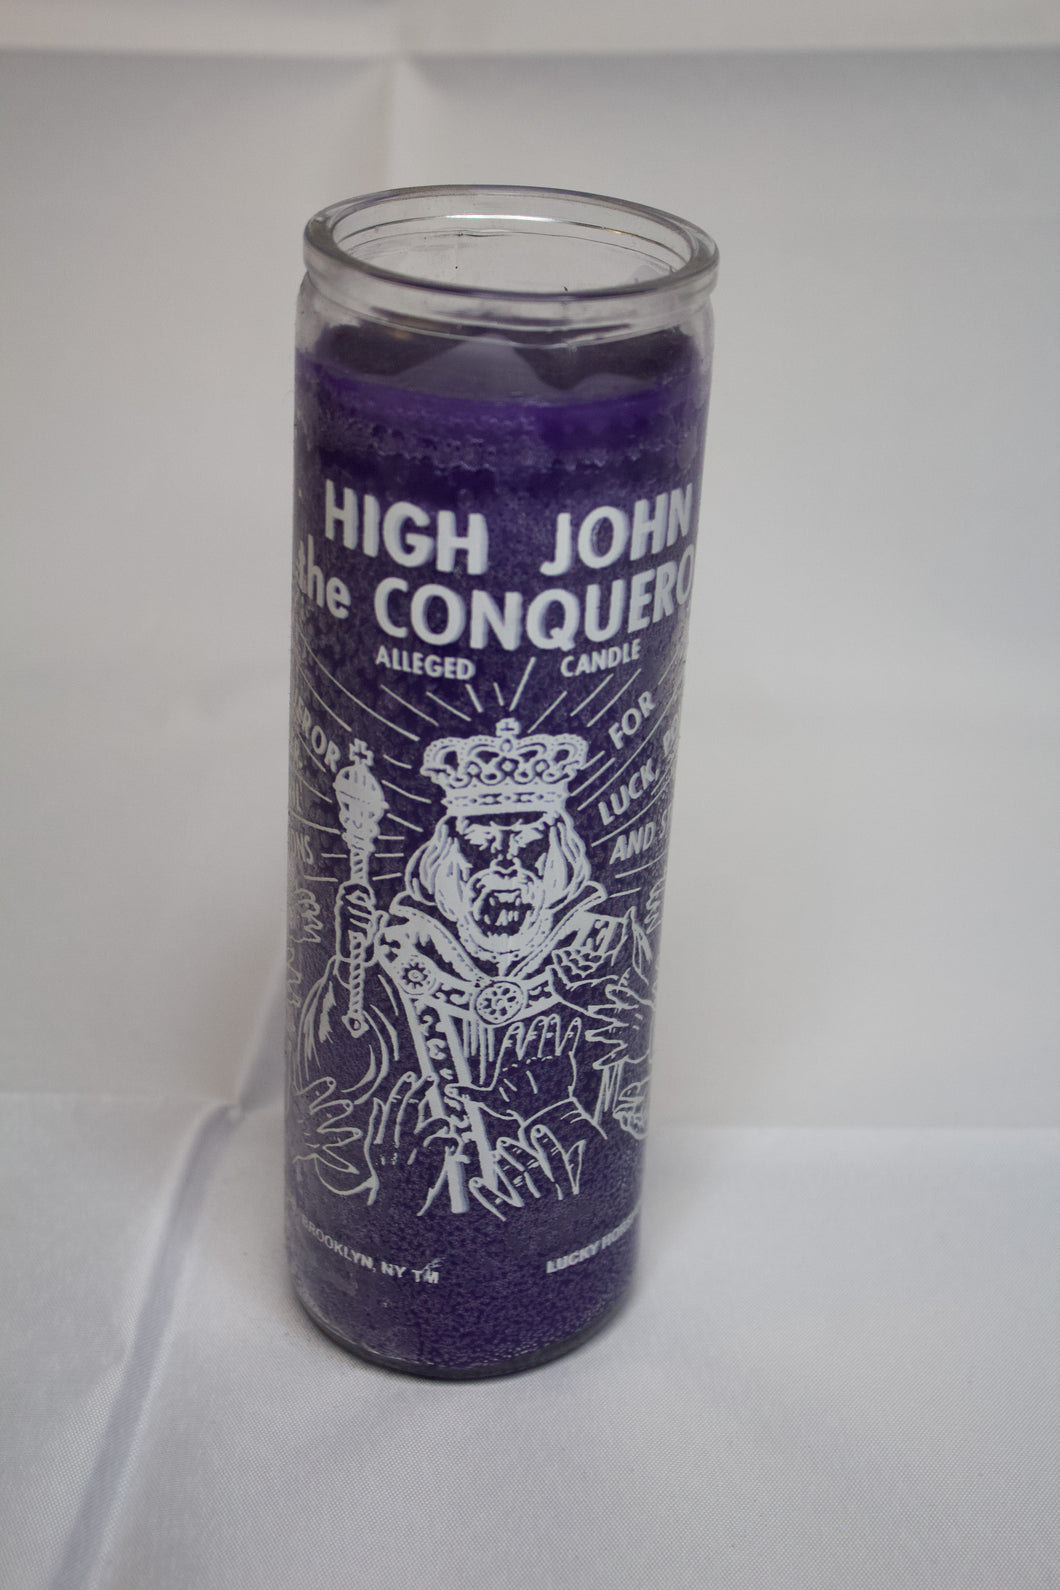 High John Conqueror